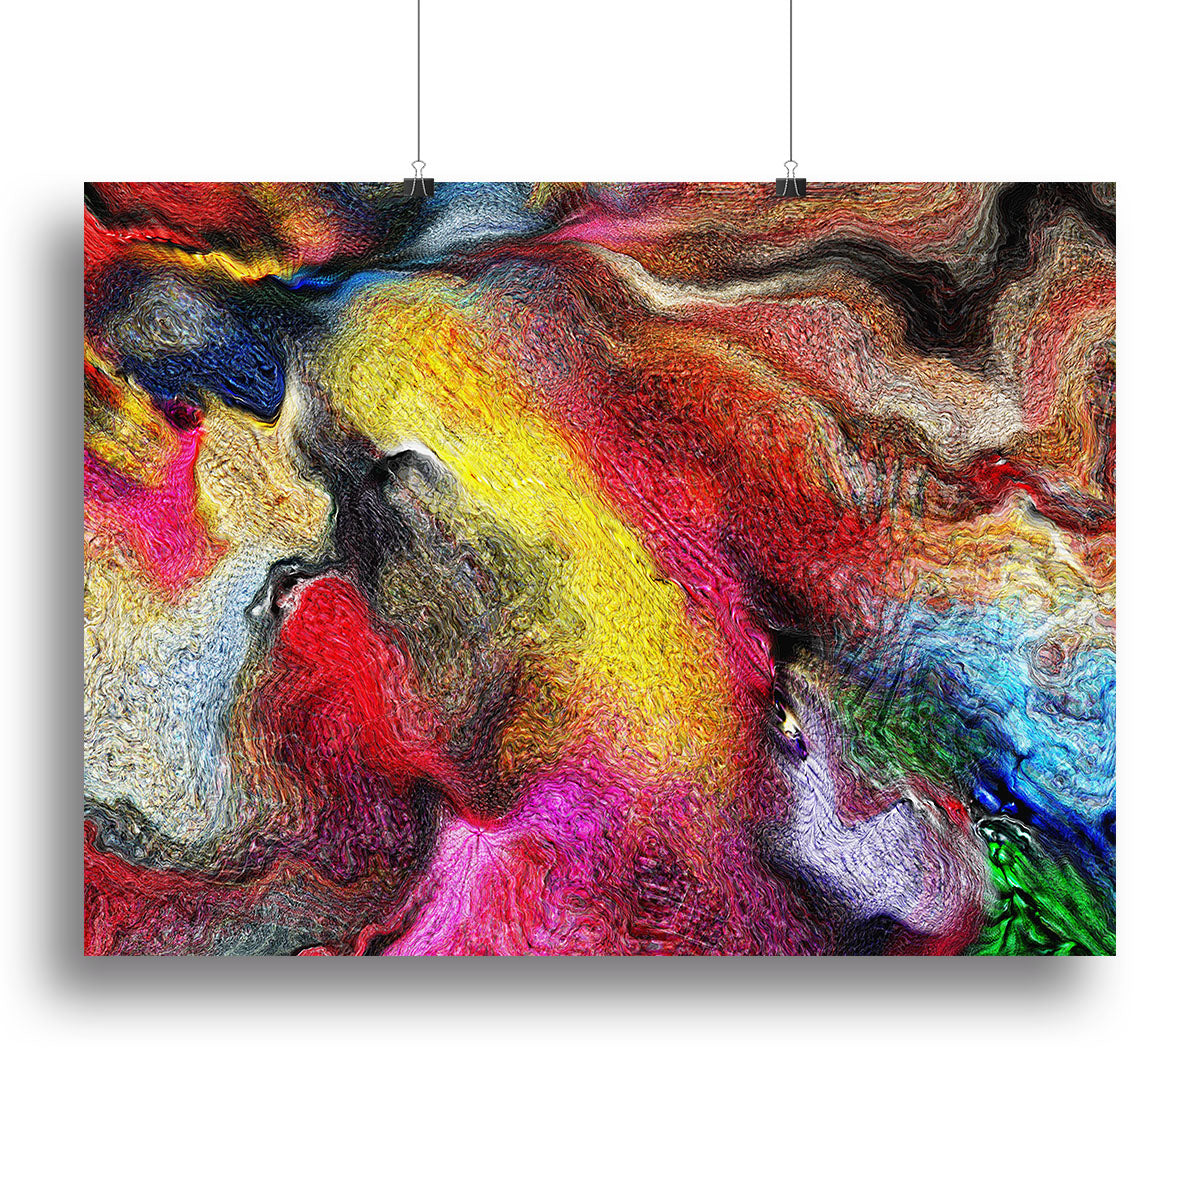 Colour Spash Canvas Print or Poster - Canvas Art Rocks - 2